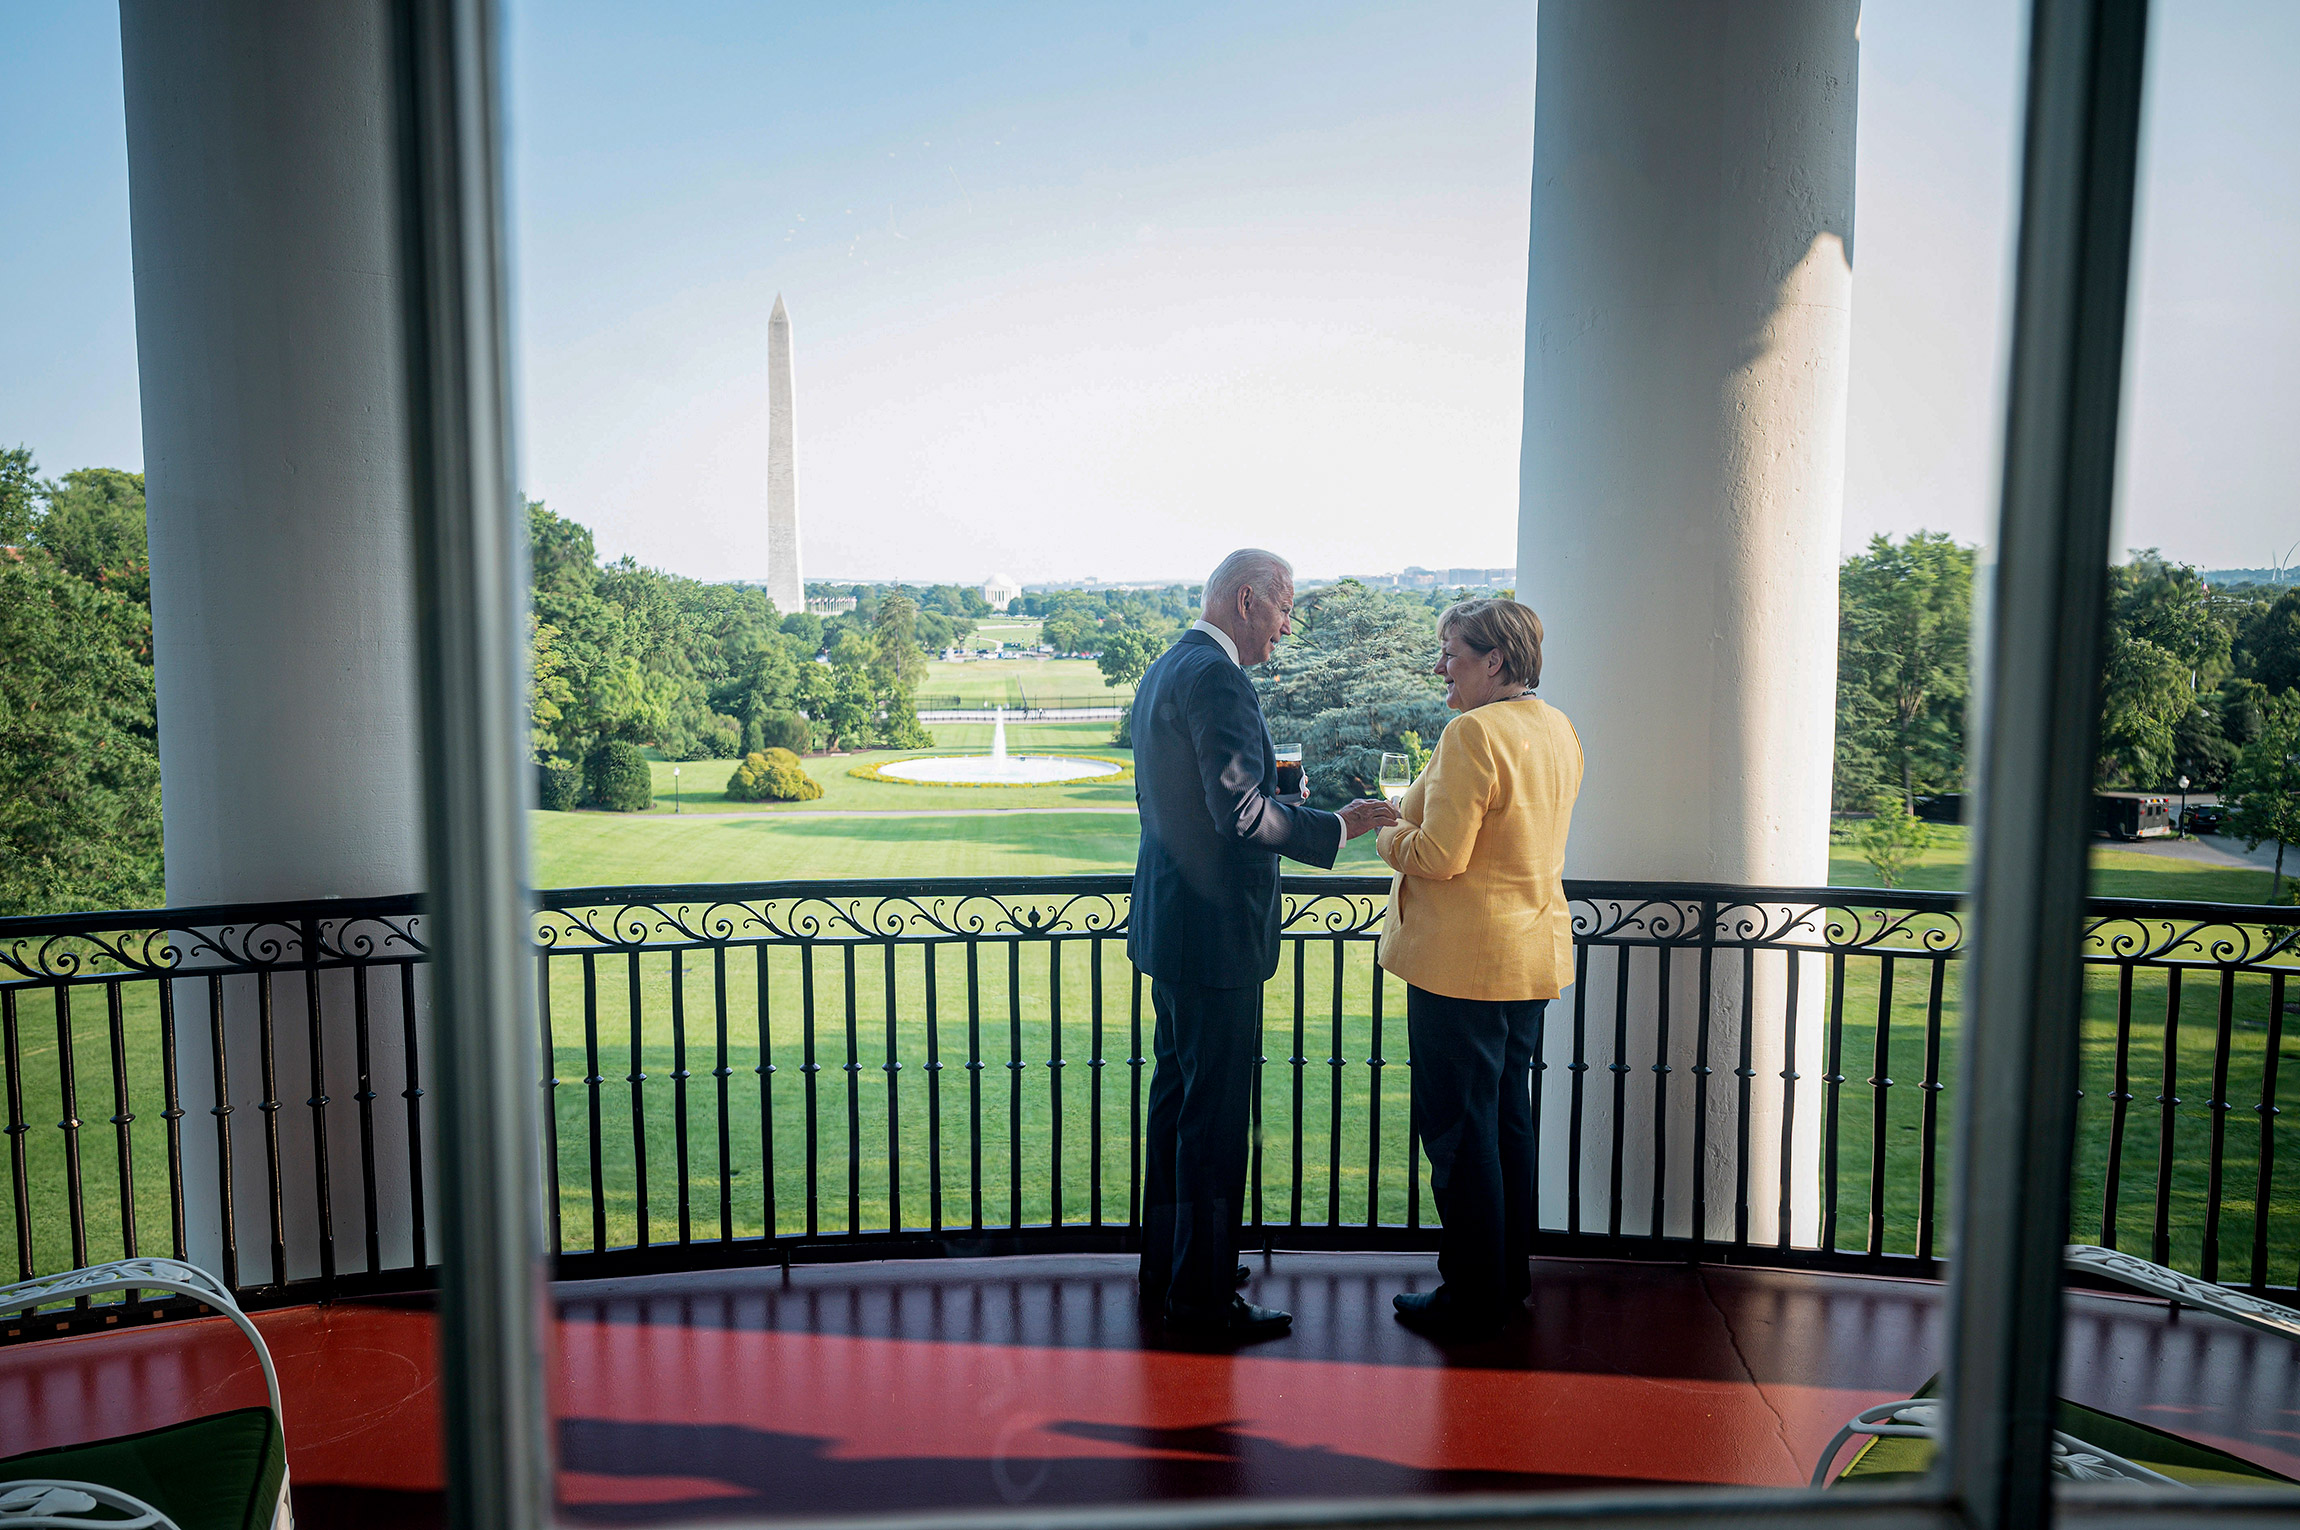 Во время визита Ангелы Меркель в США канцлер Германии и президент США договорились защищать демократию.

На фото: лидеры двух стран в Белом доме 15 июля